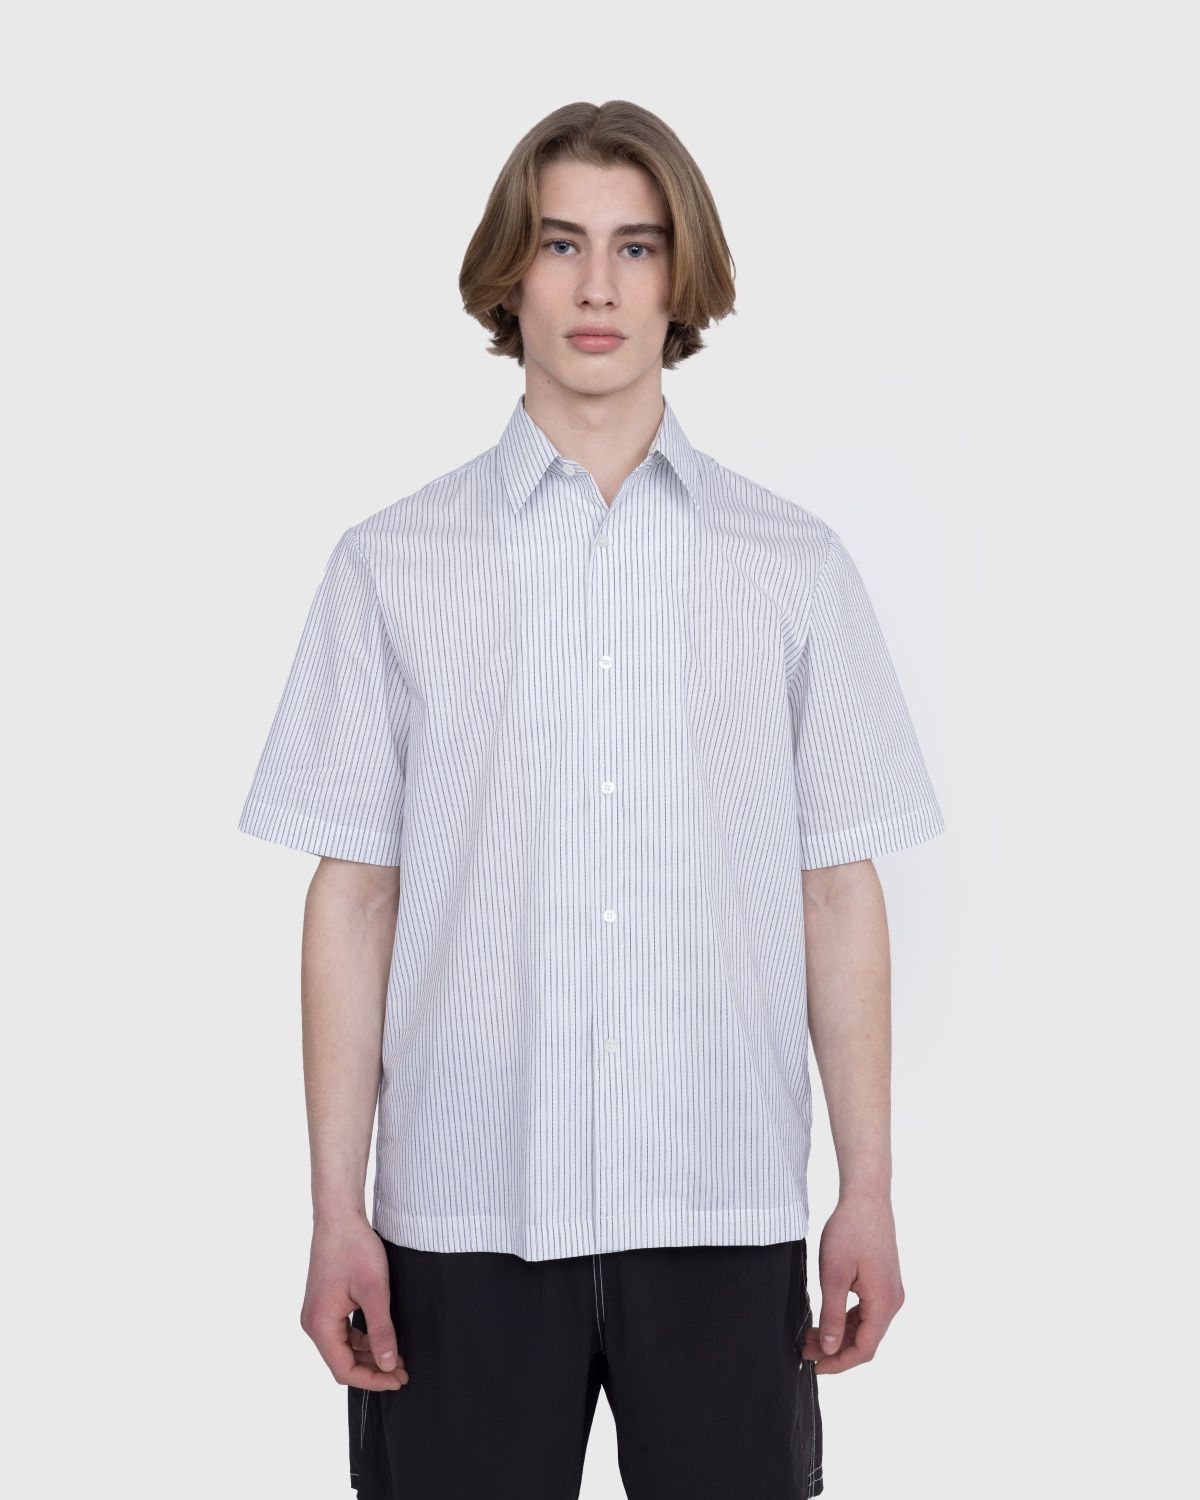 Dries van Noten – Clasen Shirt White | Highsnobiety Shop